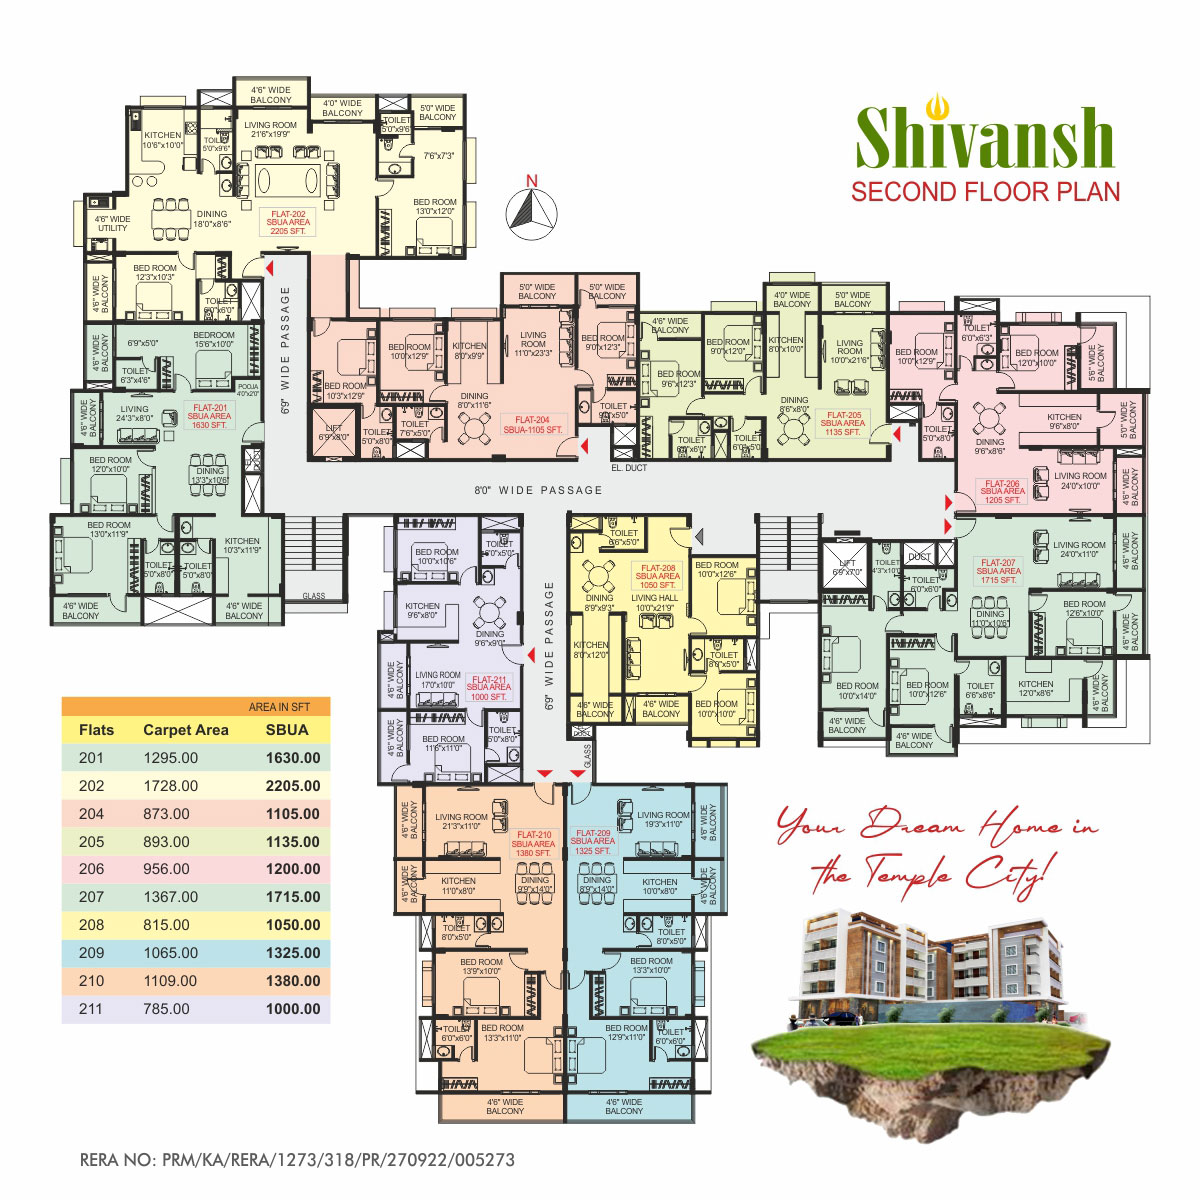 Shivansh Udupi Second Floor Plan